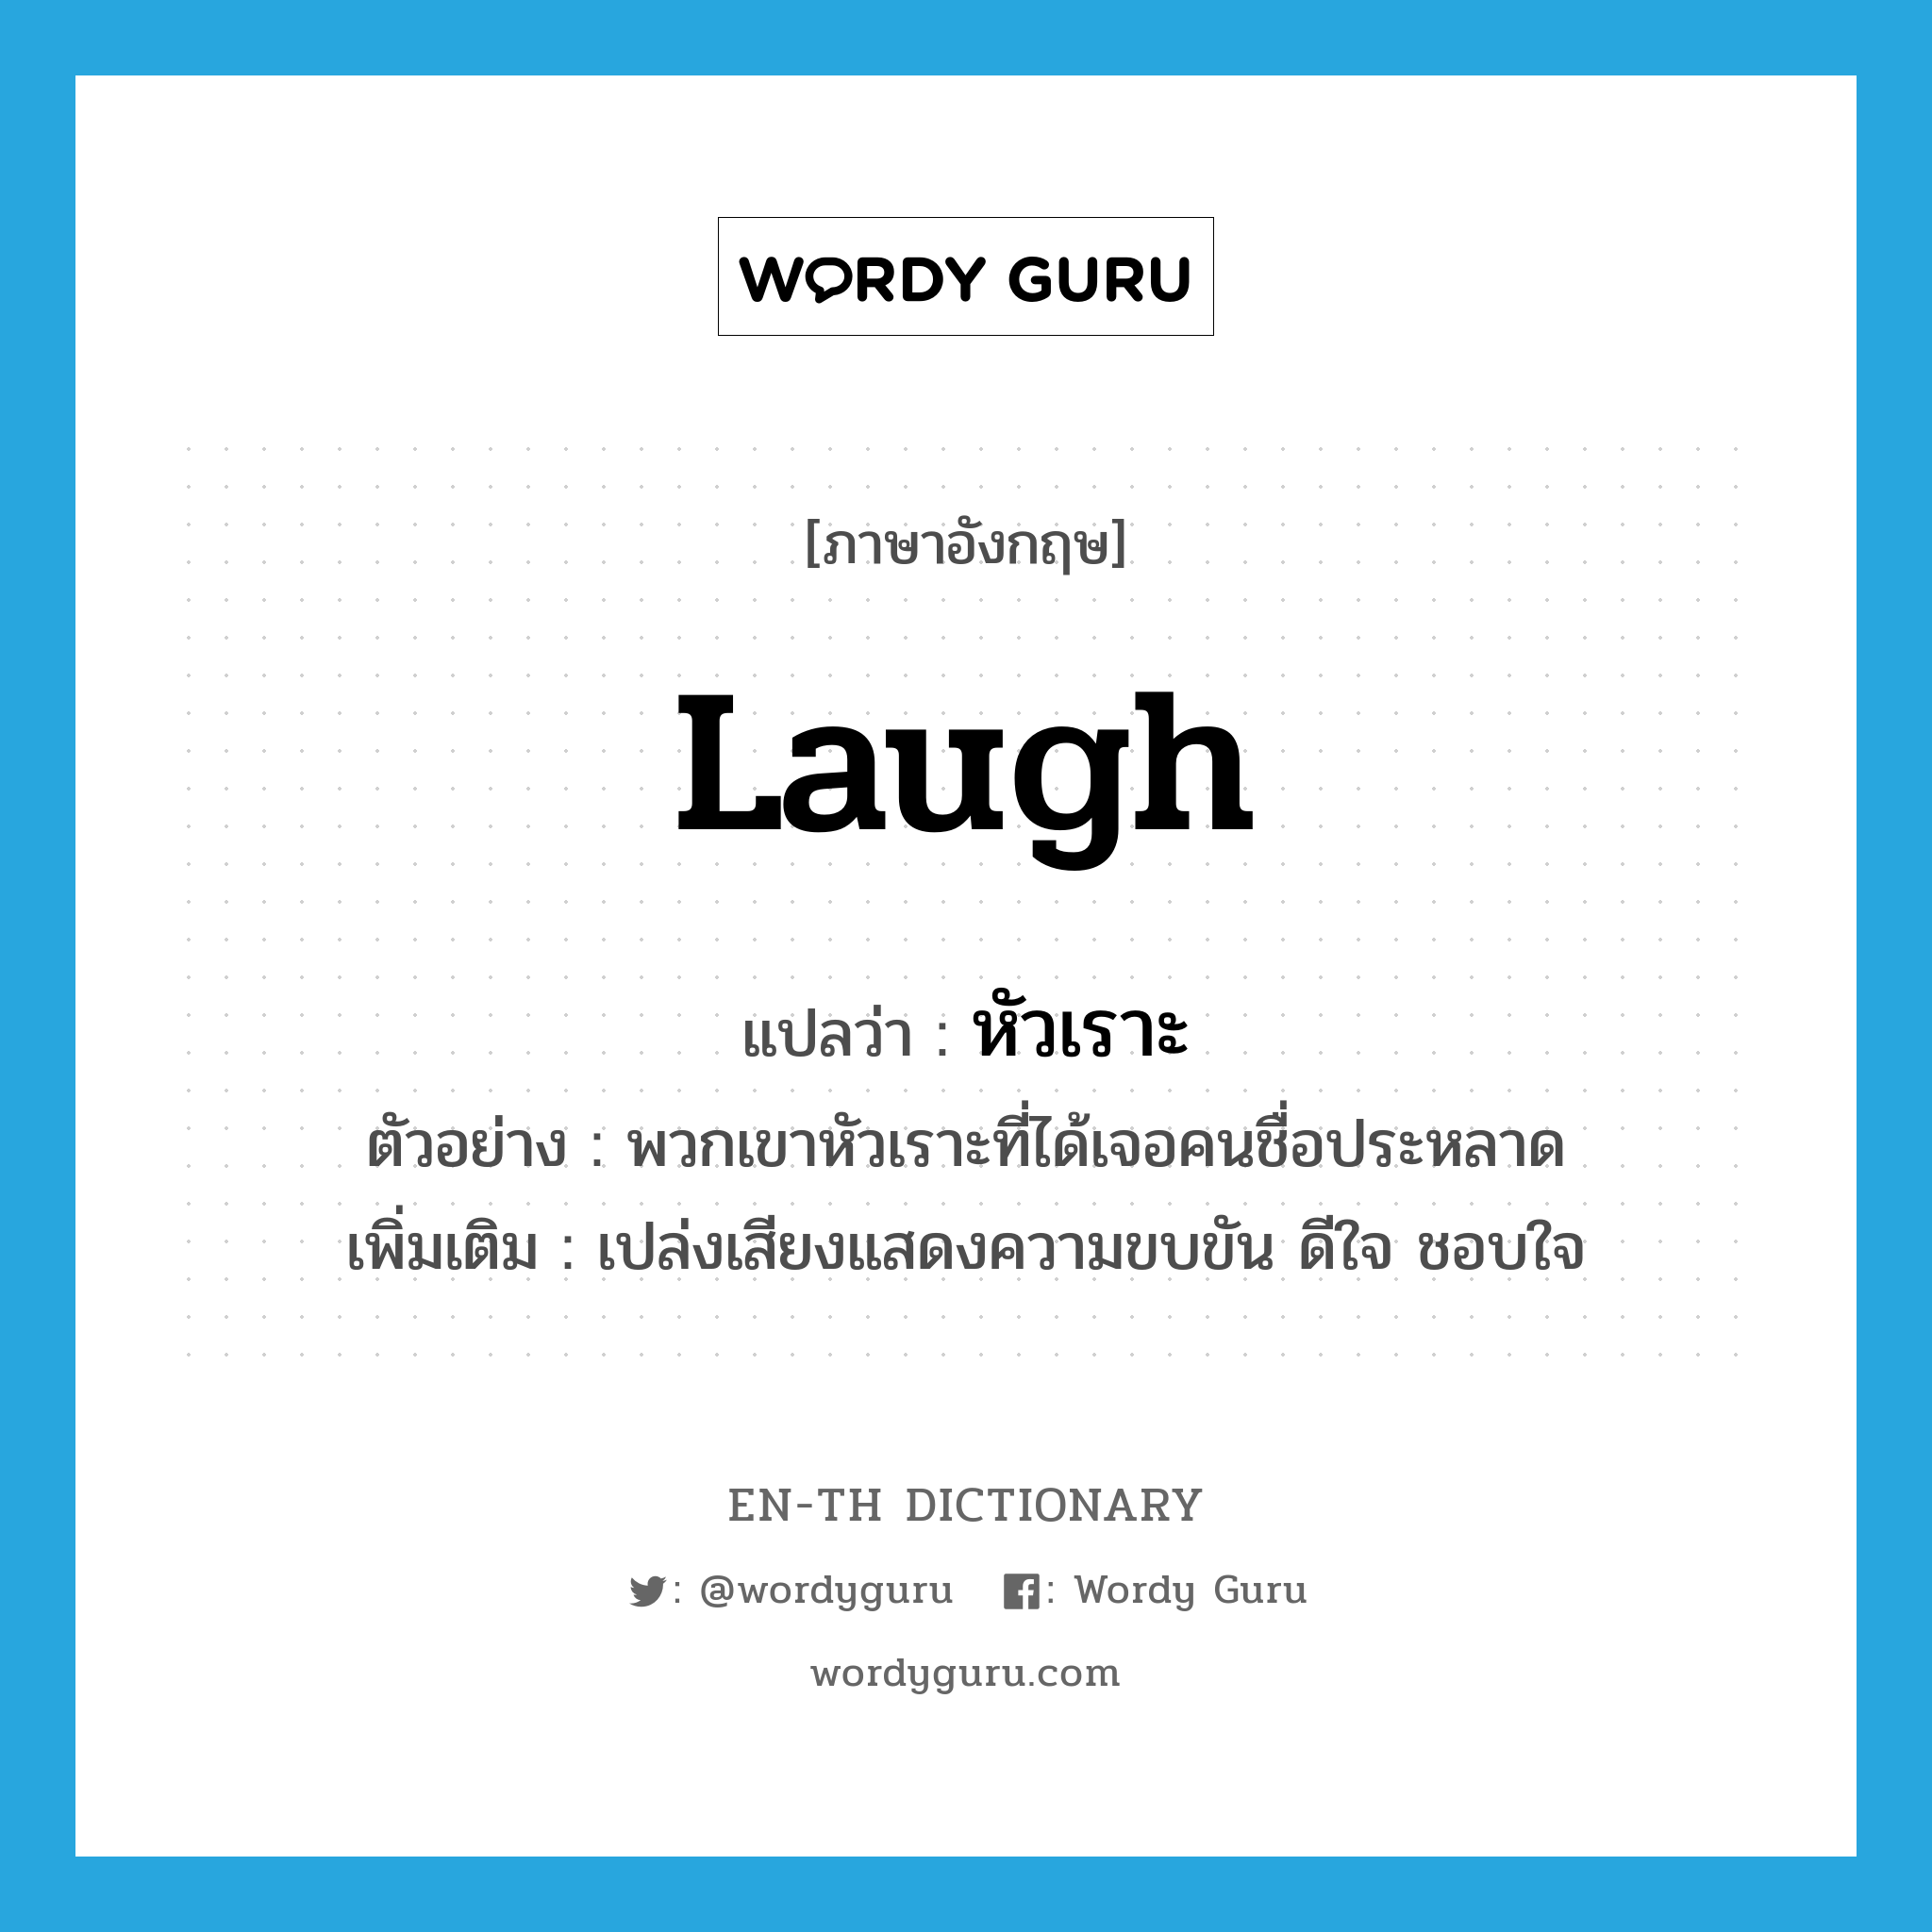 หัวเราะ ภาษาอังกฤษ?, คำศัพท์ภาษาอังกฤษ หัวเราะ แปลว่า laugh ประเภท V ตัวอย่าง พวกเขาหัวเราะที่ได้เจอคนชื่อประหลาด เพิ่มเติม เปล่งเสียงแสดงความขบขัน ดีใจ ชอบใจ หมวด V